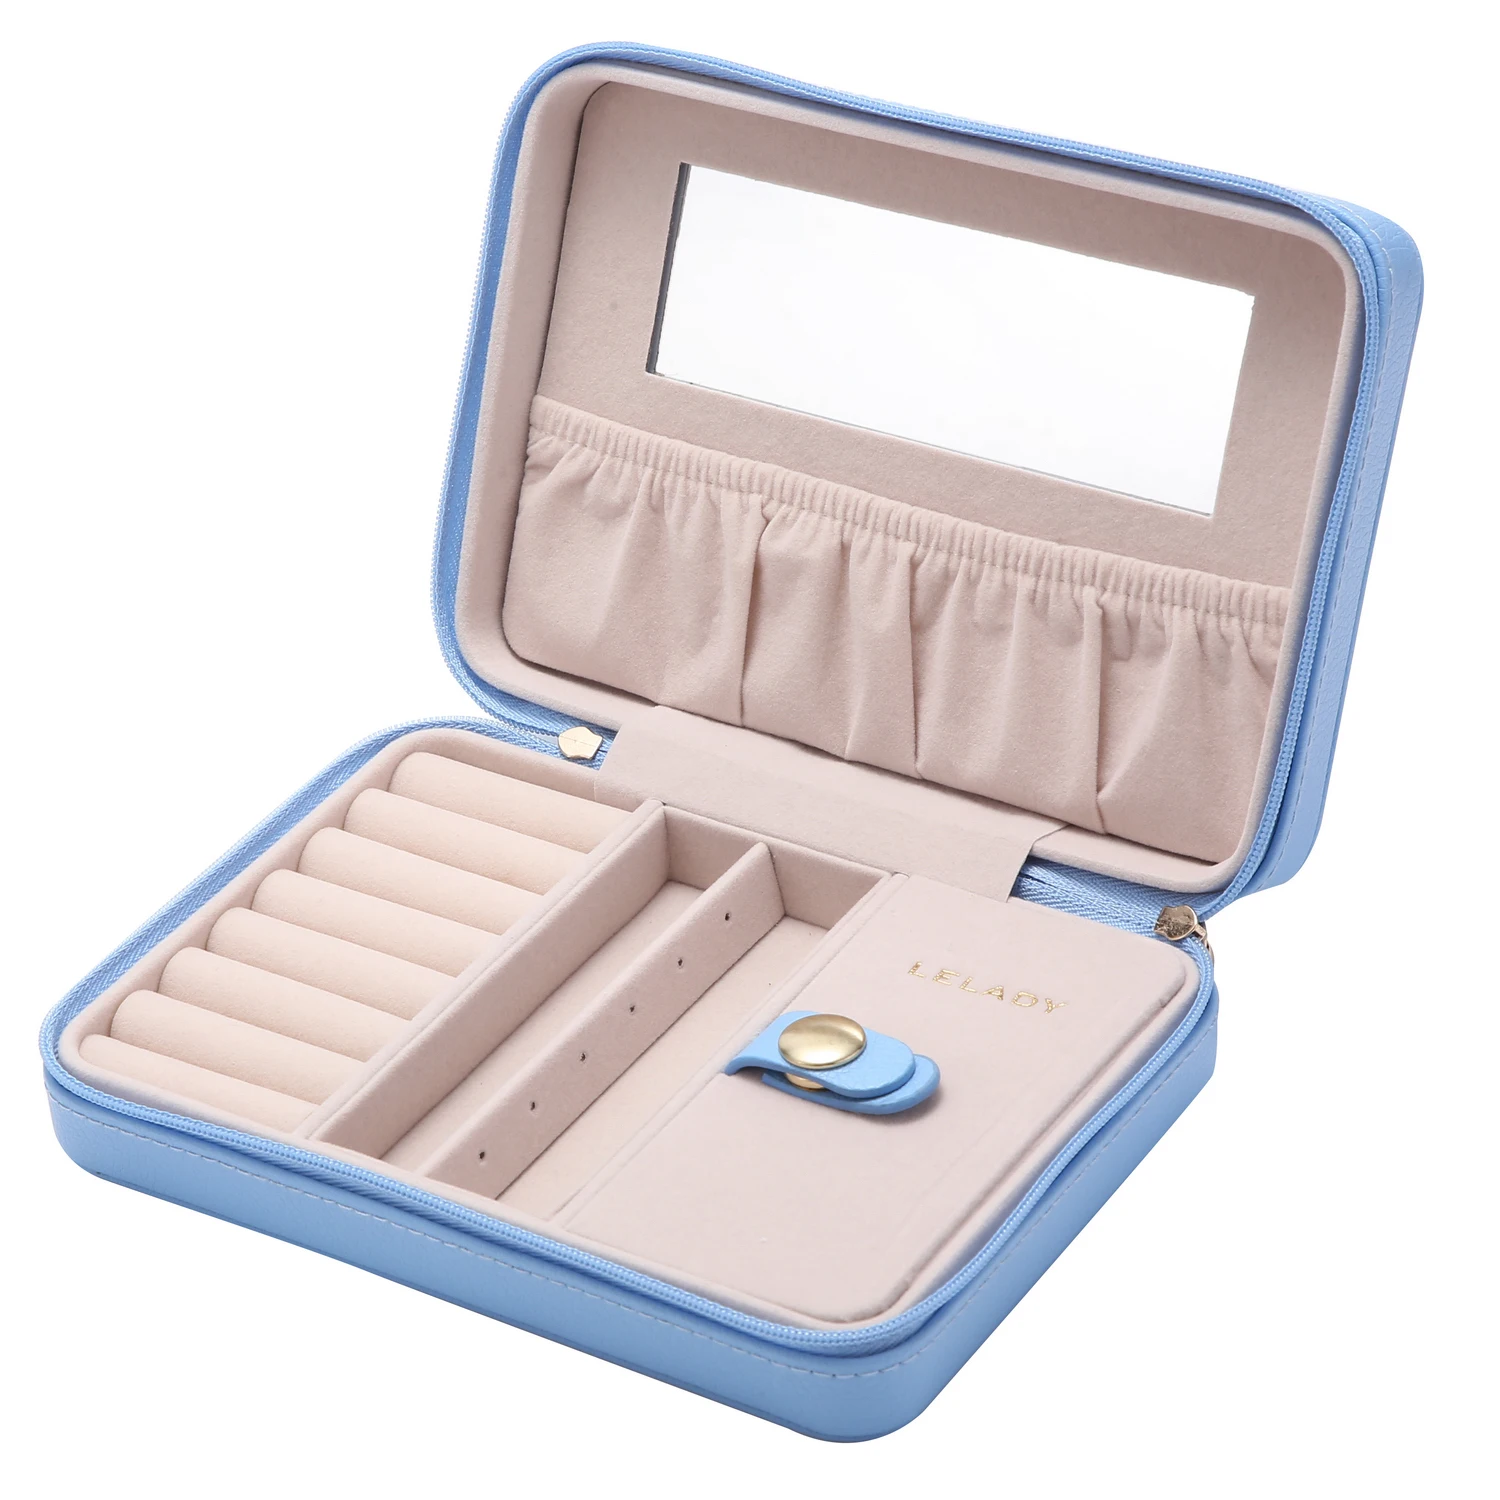 LELADY 18*5*13 см, портативная маленькая коробка для хранения ювелирных изделий, органайзер, коробка с зеркалом внутри, бархатная кожаная шкатулка для украшений для женщин - Цвет: Синий